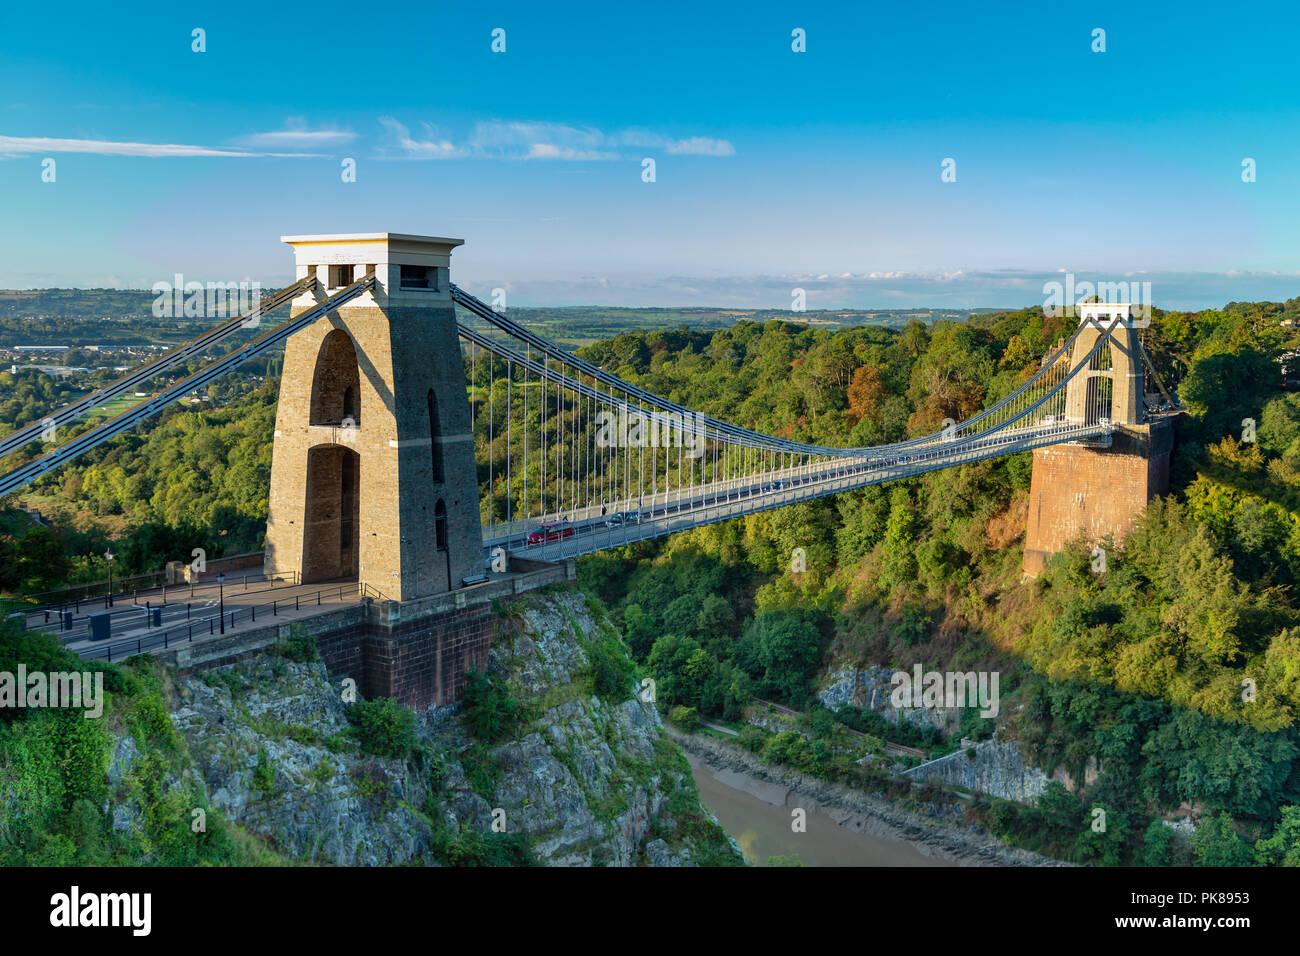 Il ponte sospeso di Clifton Bristol Inghilterra Settembre 07, 2018 il famoso ponte sospeso di Clifton, acrss the Avon Gorge, progettato da Isambard Ki Foto Stock